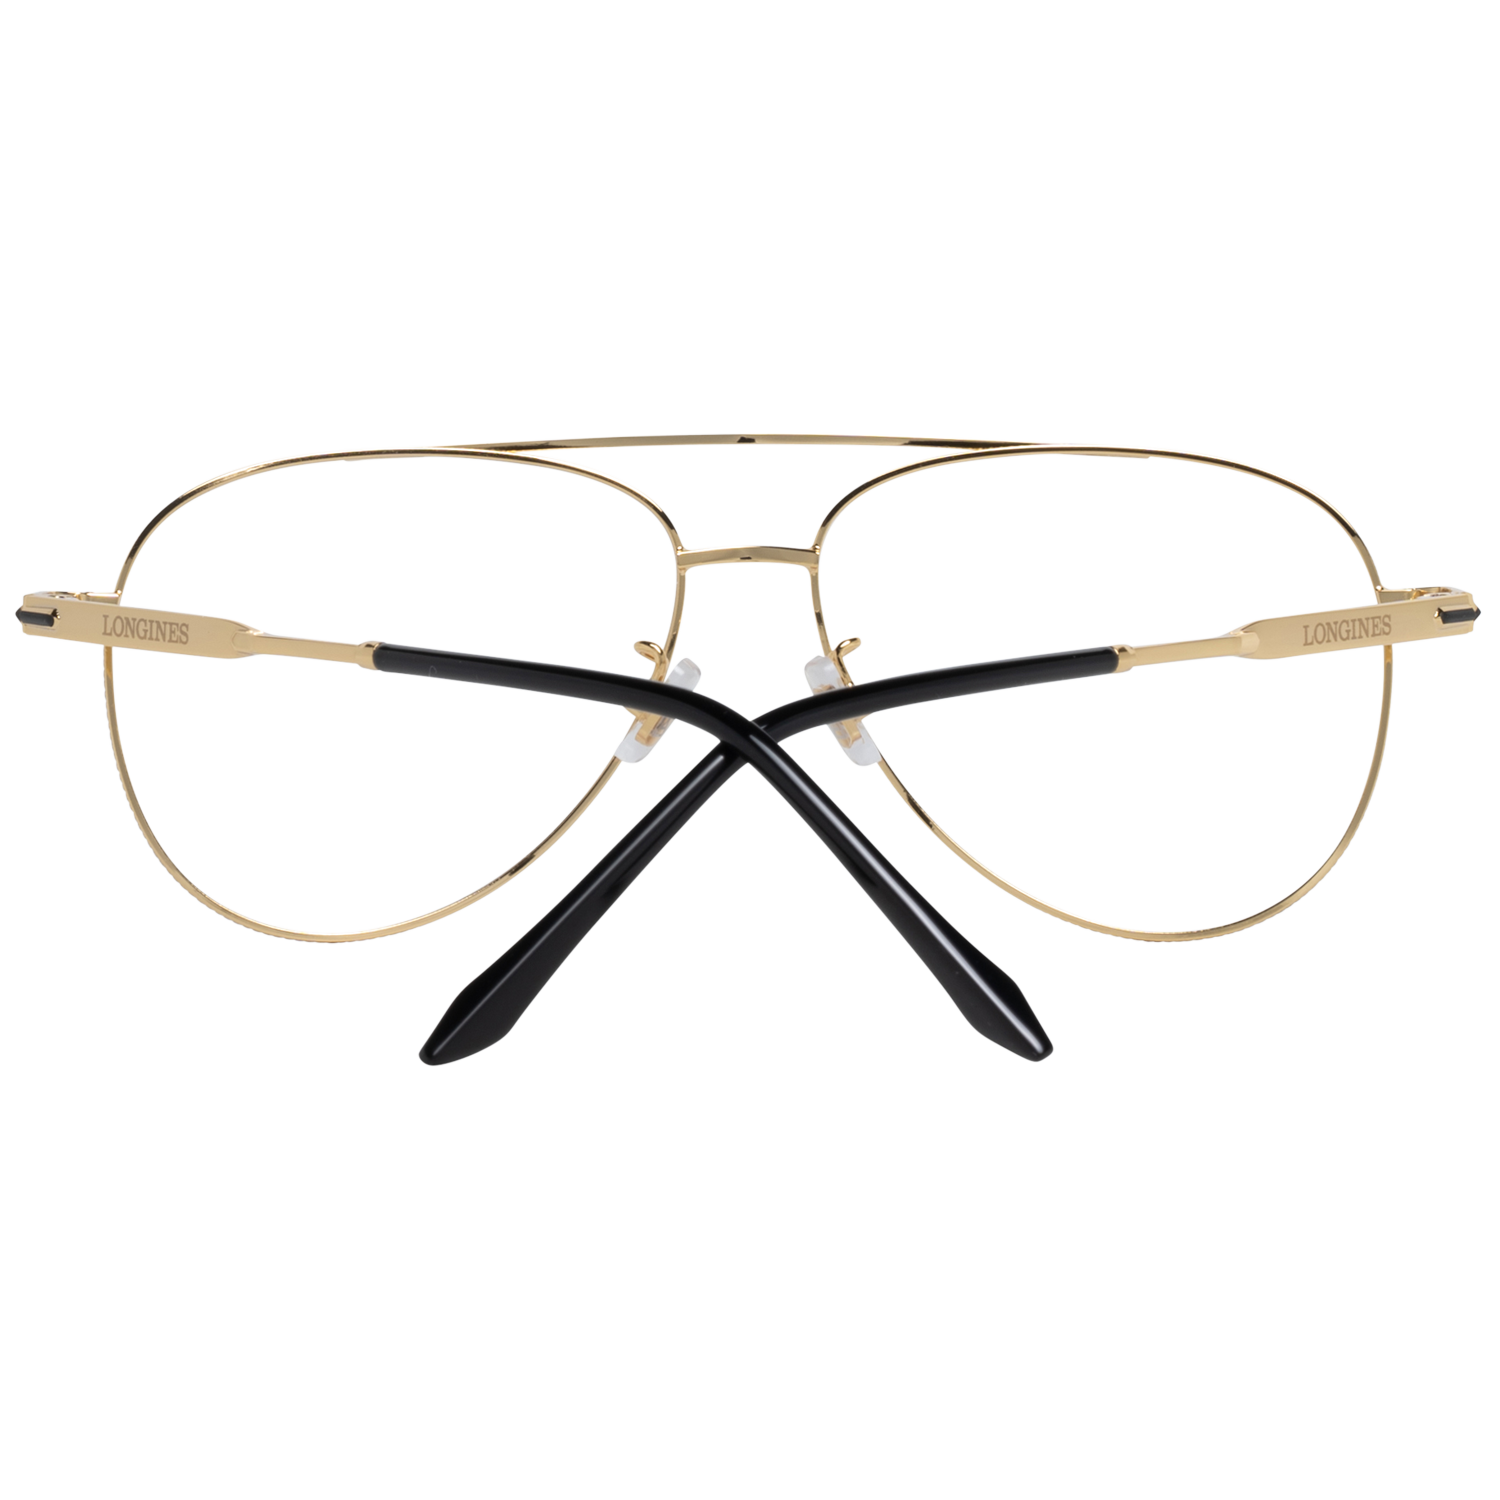 Longines Frames Longines Optical Frame LG5003-H 030 56 Eyeglasses Eyewear UK USA Australia 